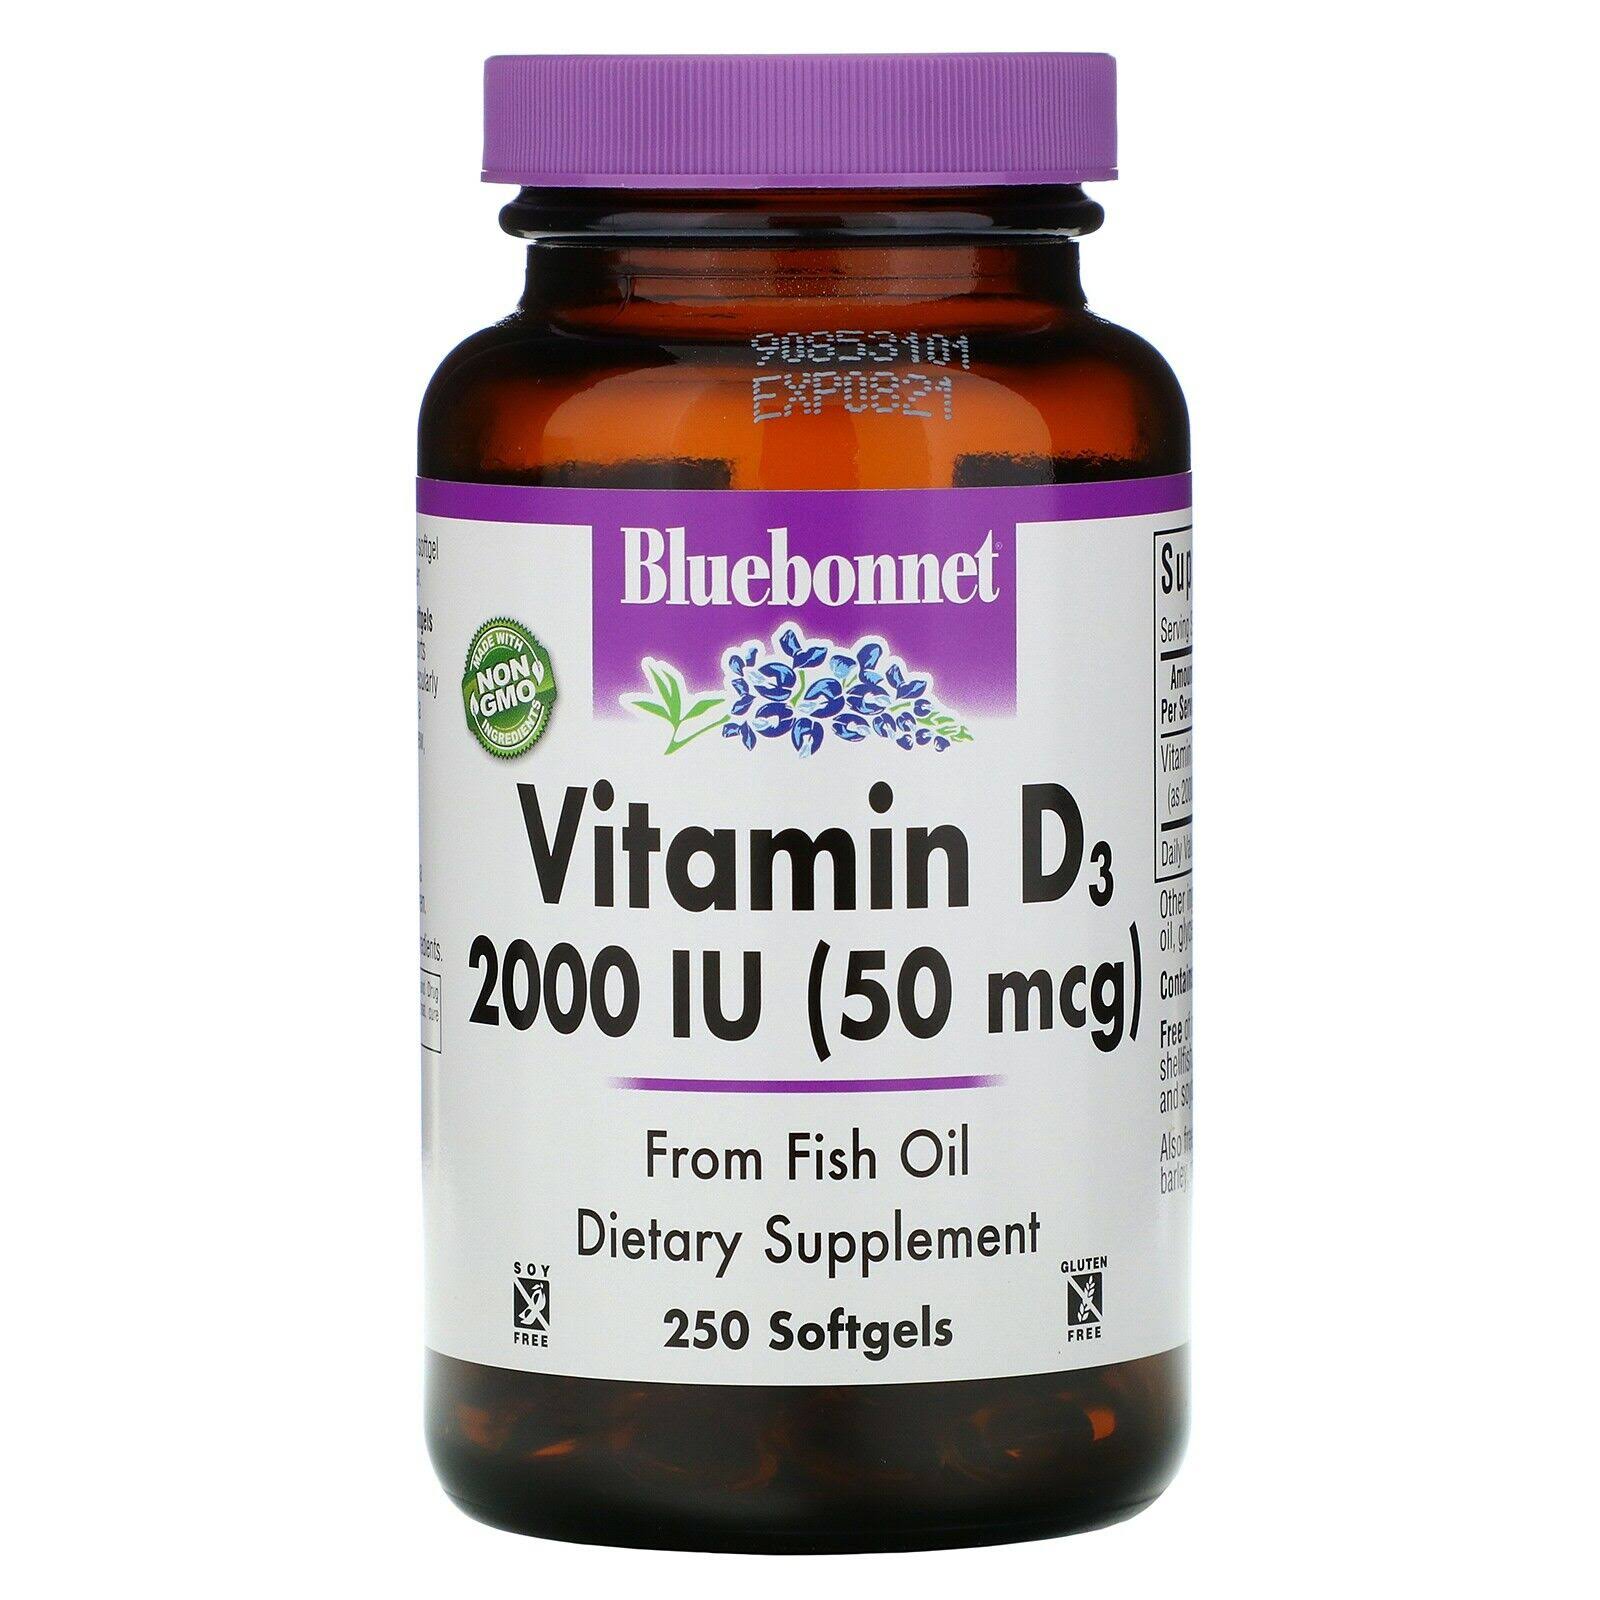 Bluebonnet Vitamin D3 2000 IU - 250 Softgels